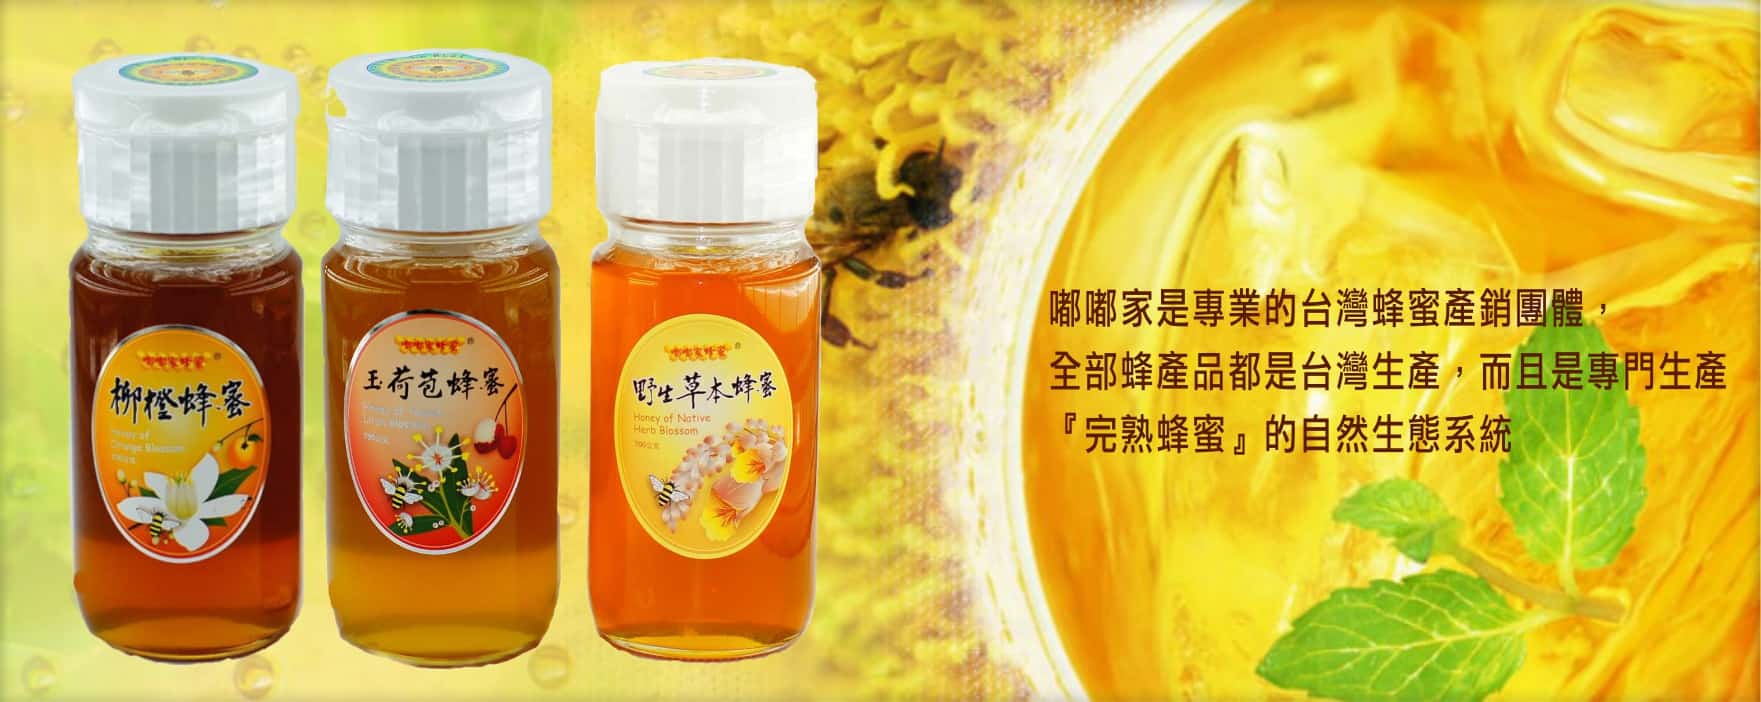 《嘟嘟家蜂蜜》蜂蜜三優選超值組~(700g)3罐裝~100%台灣天然蜂蜜-玉荷包蜂蜜/野生草本/柳橙/文旦蜂蜜